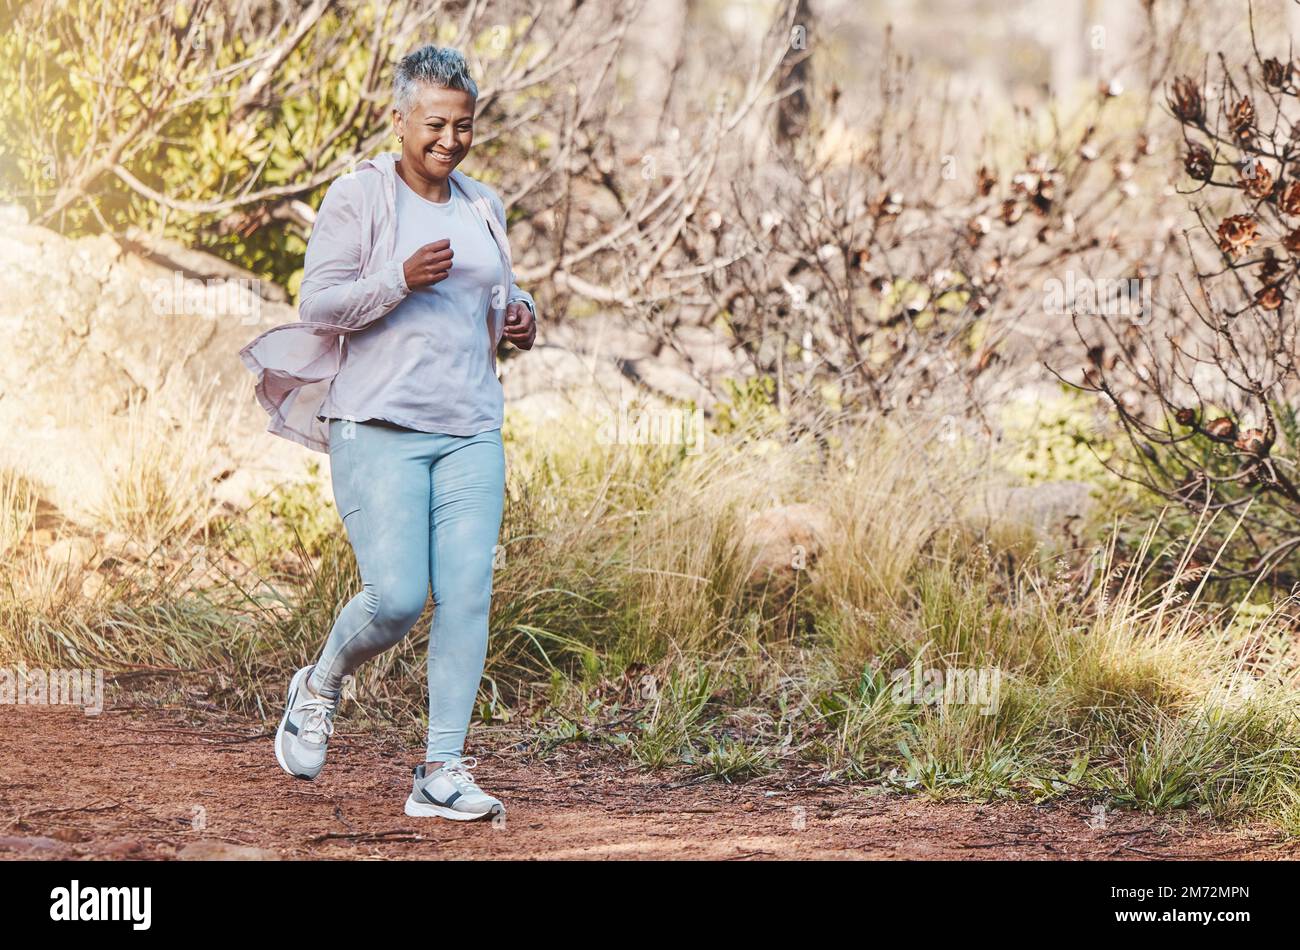 Laufen, Fitness und Seniorin in der Natur für Marathontraining, Sportgesundheit und Seniorenkardiographie in Indonesien. Lächeln, Training und glückliche ältere Menschen Stockfoto